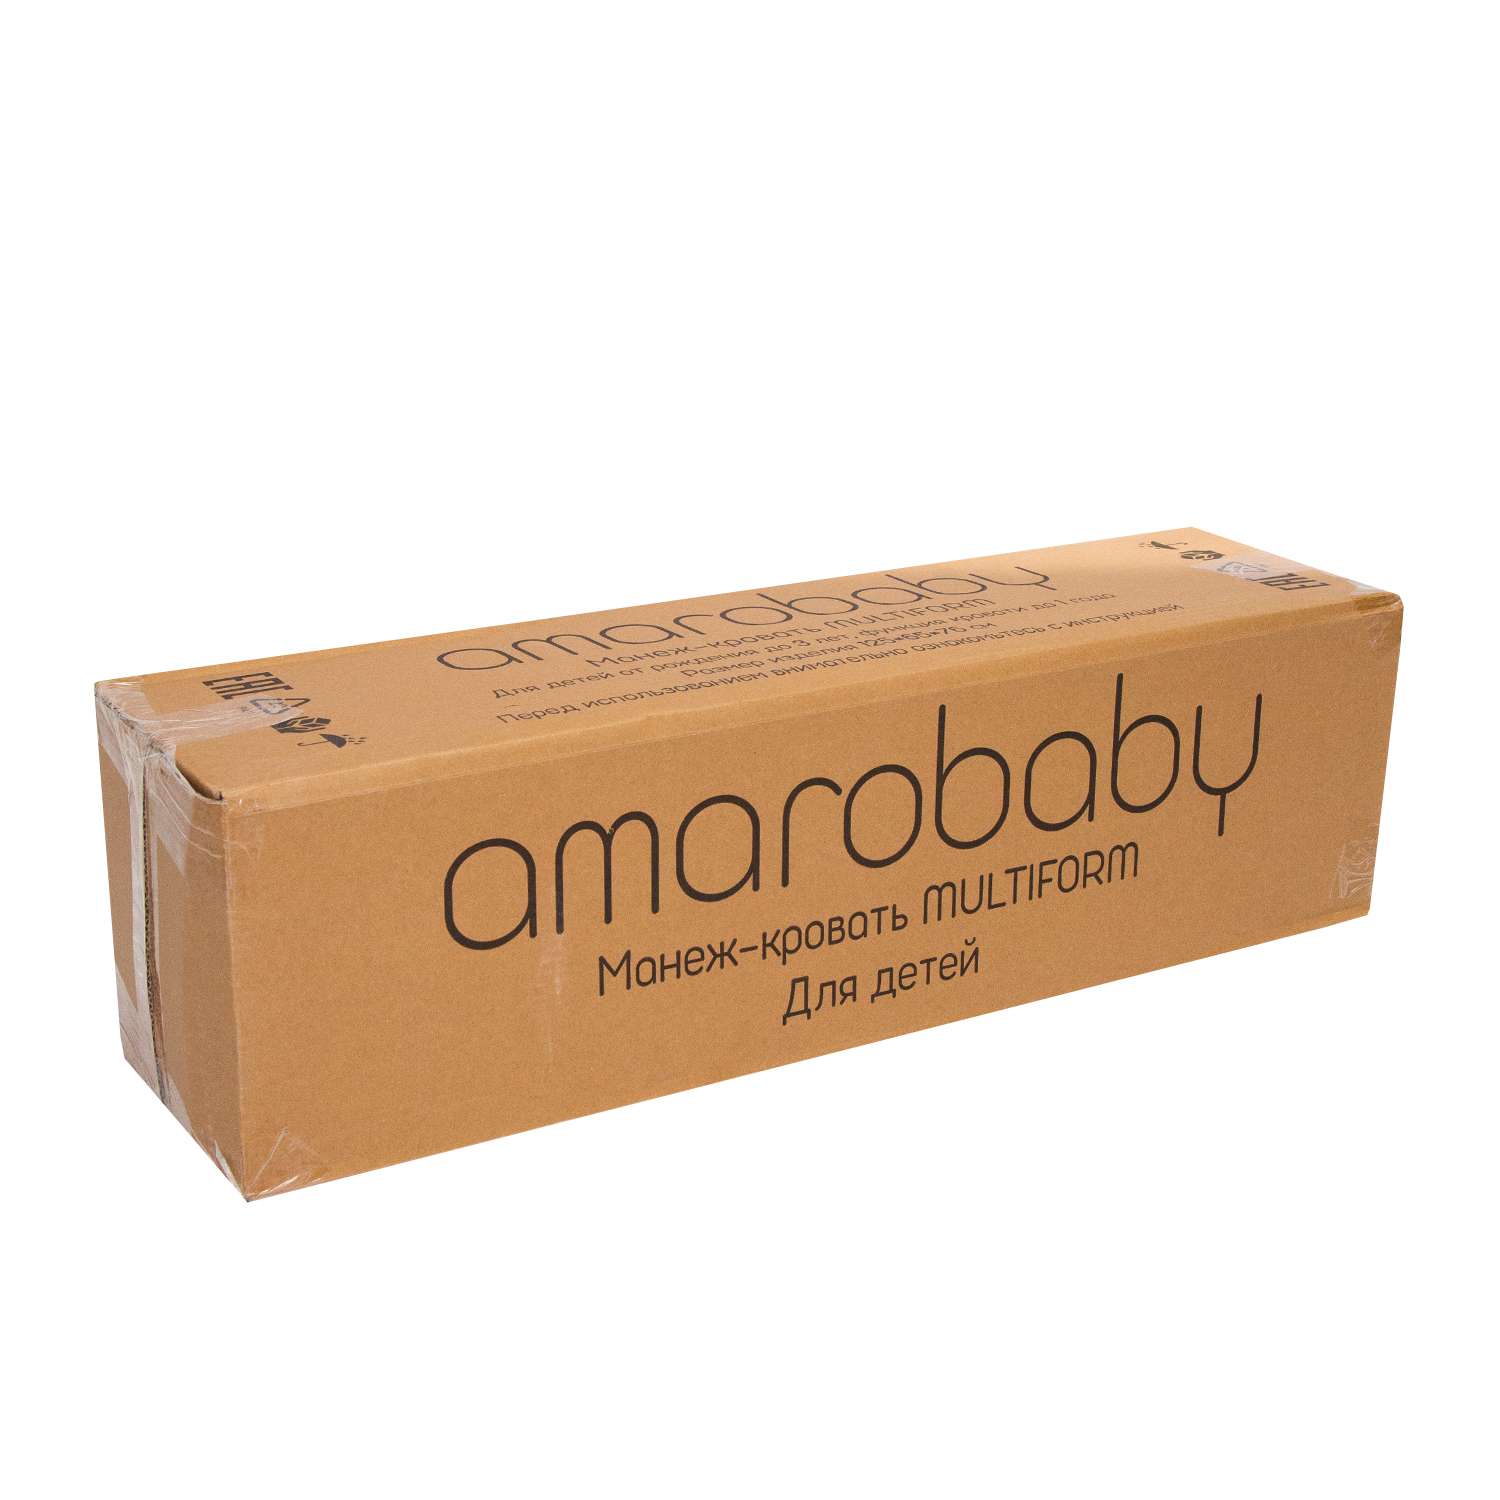 Манеж-кровать AmaroBaby Multiform Smile Friends прямоугольный бежевый AMARO-26MSF-Be - фото 16